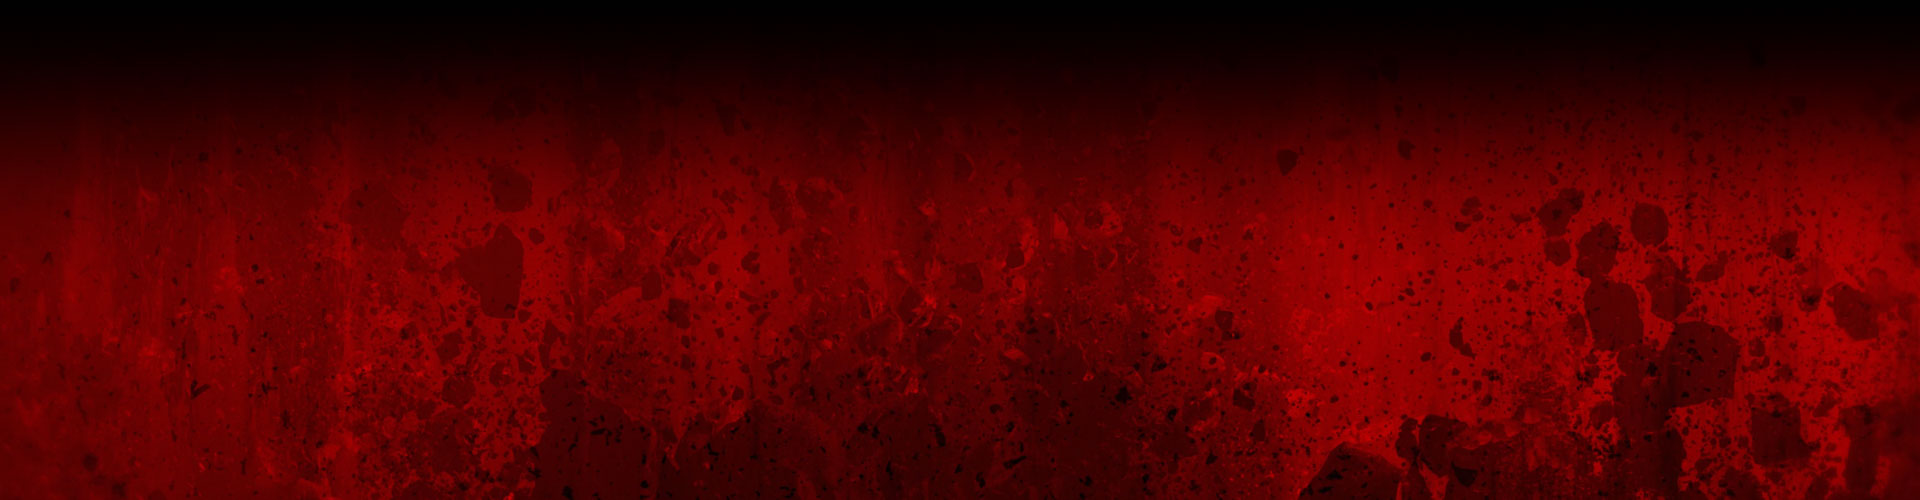 一堵紅色的牆壁上覆蓋著黑暗的飛濺和被摧毀的岩石的圖像。